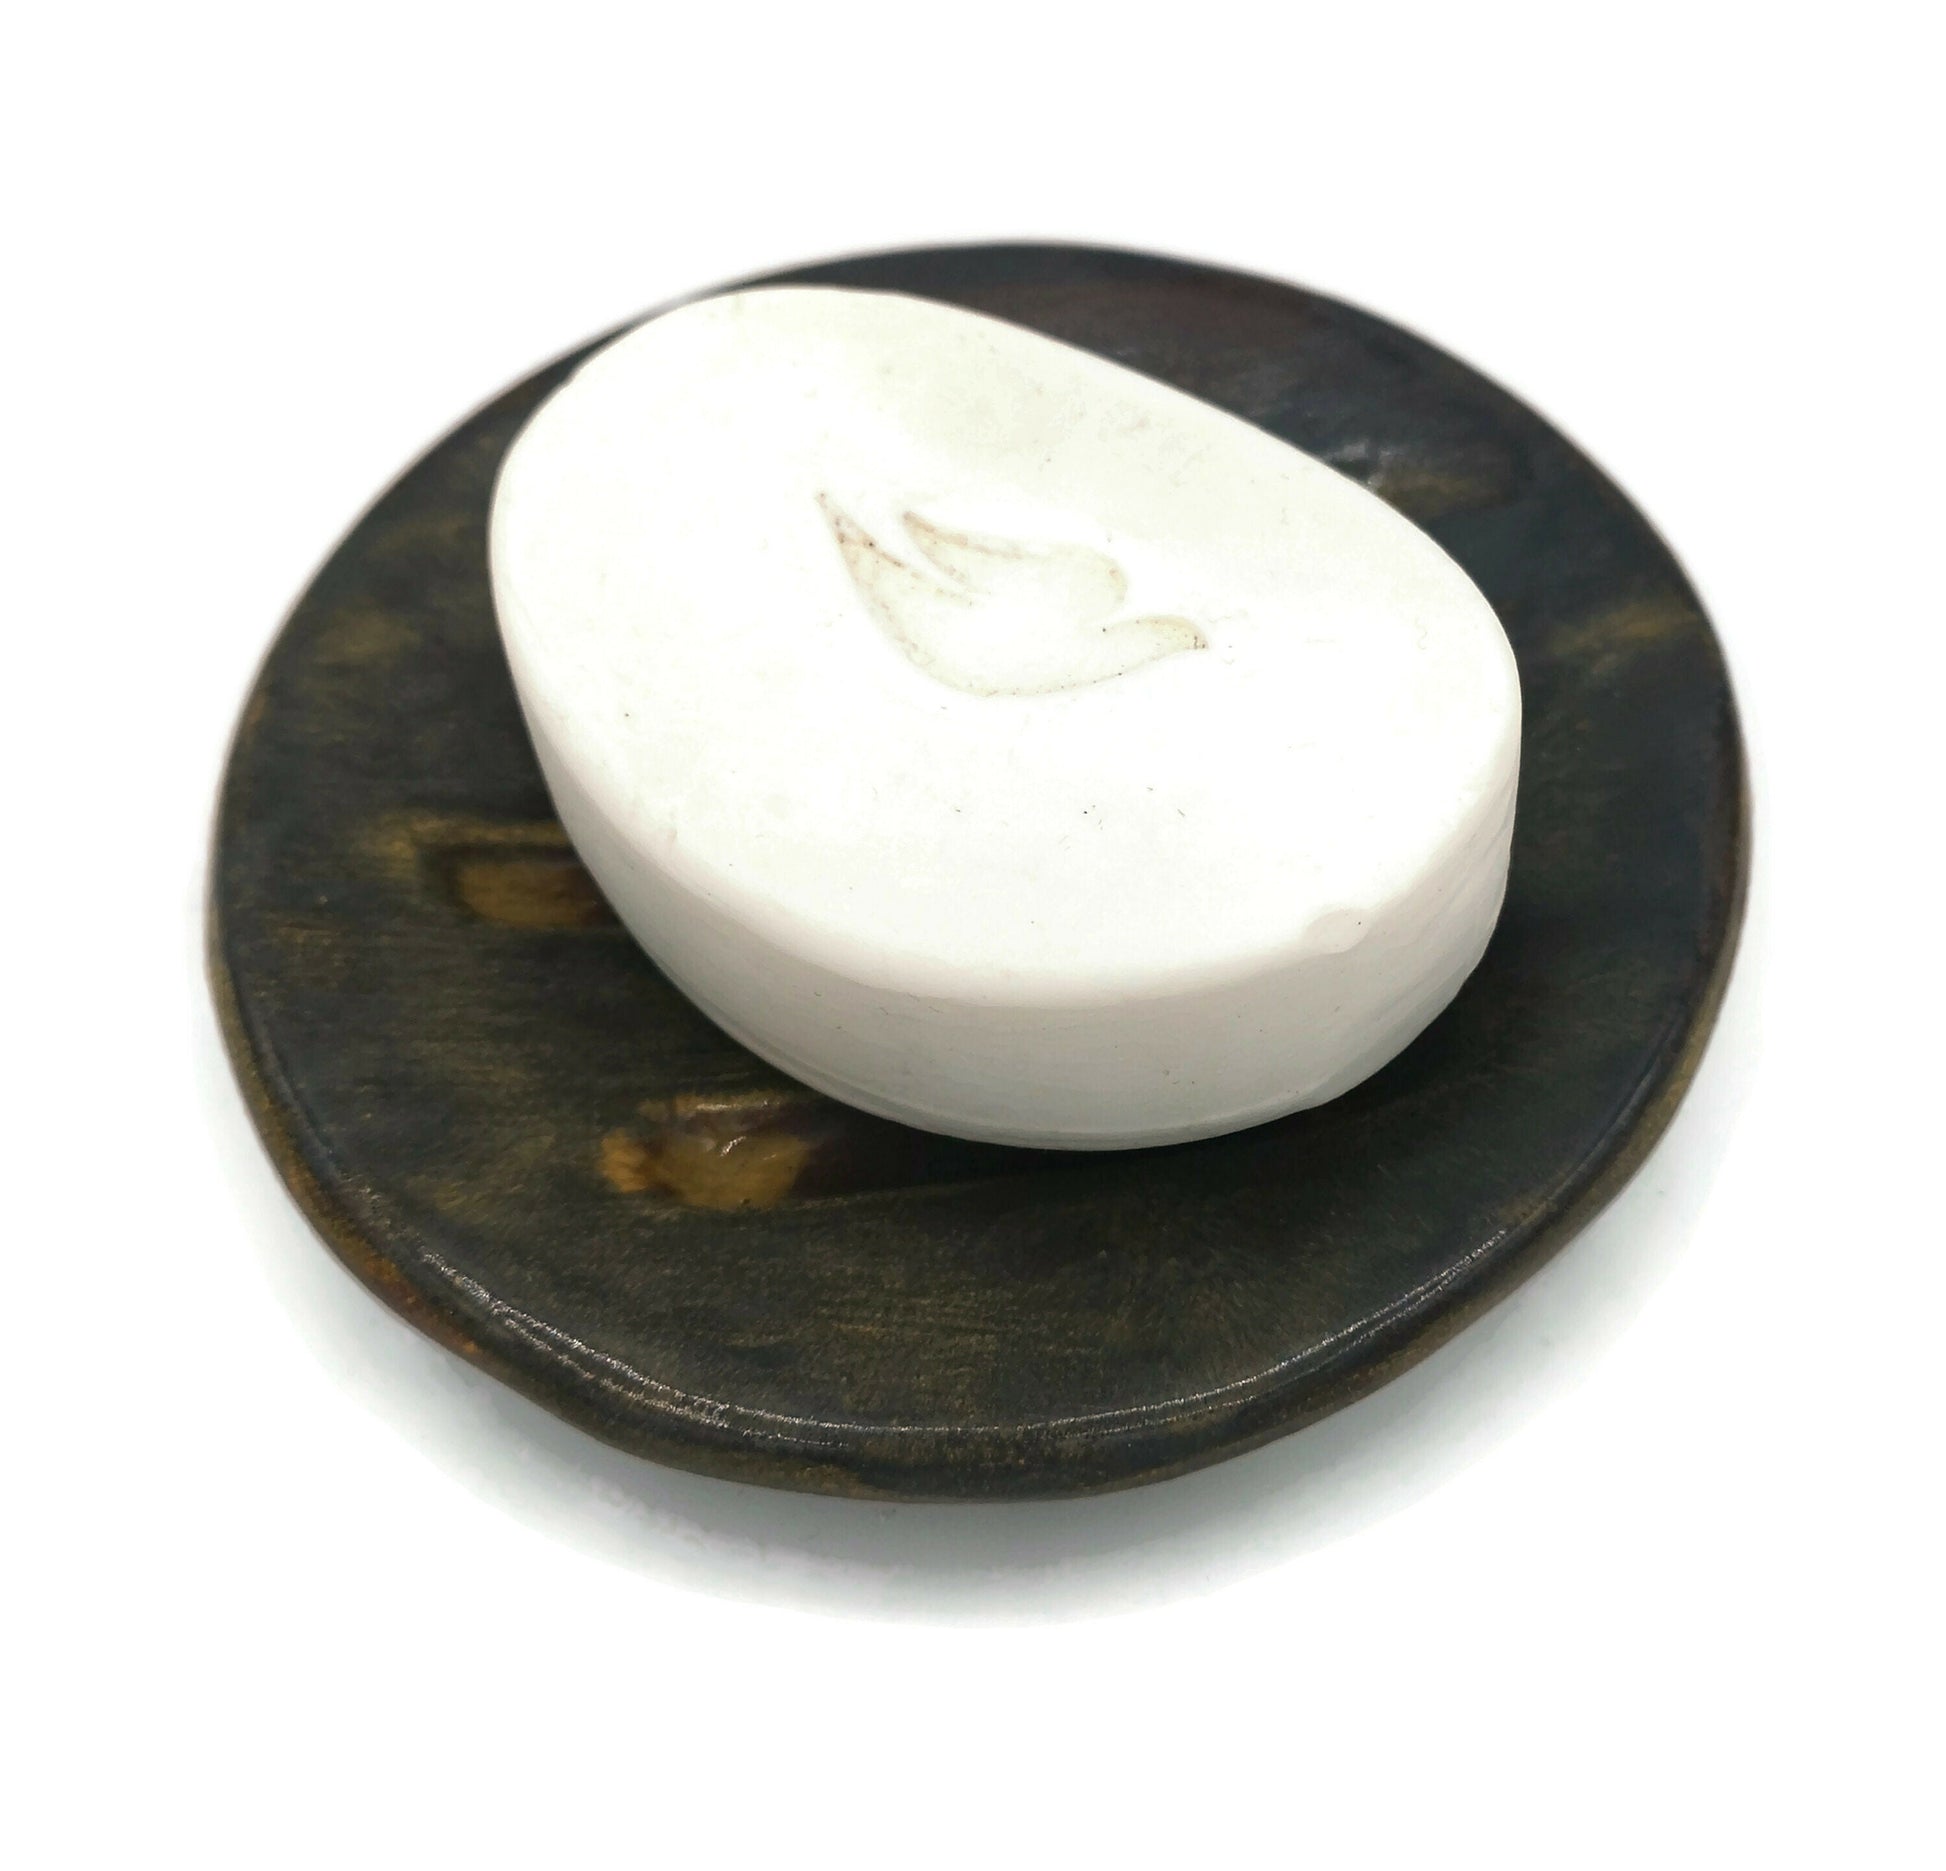 DISH SOAP DISPENSER With Drain, Ceramic Soap Dish Tray, Bathroom Accessories For Soap Bar Soap Saver - Ceramica Ana Rafael